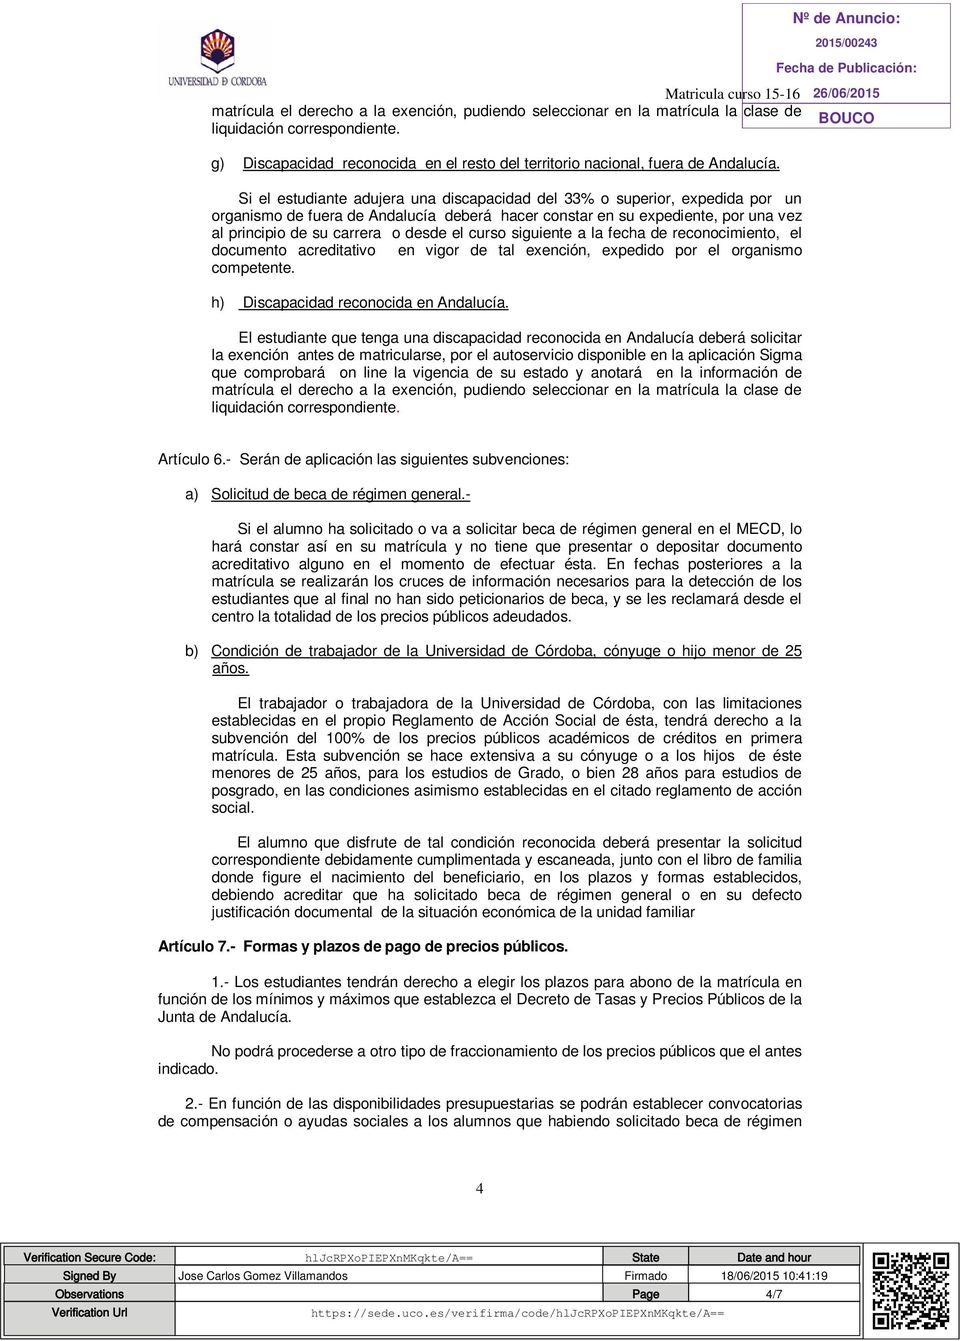 curso siguiente a la fecha de reconocimiento, el documento acreditativo en vigor de tal exención, expedido por el organismo competente. h) Discapacidad reconocida en Andalucía.